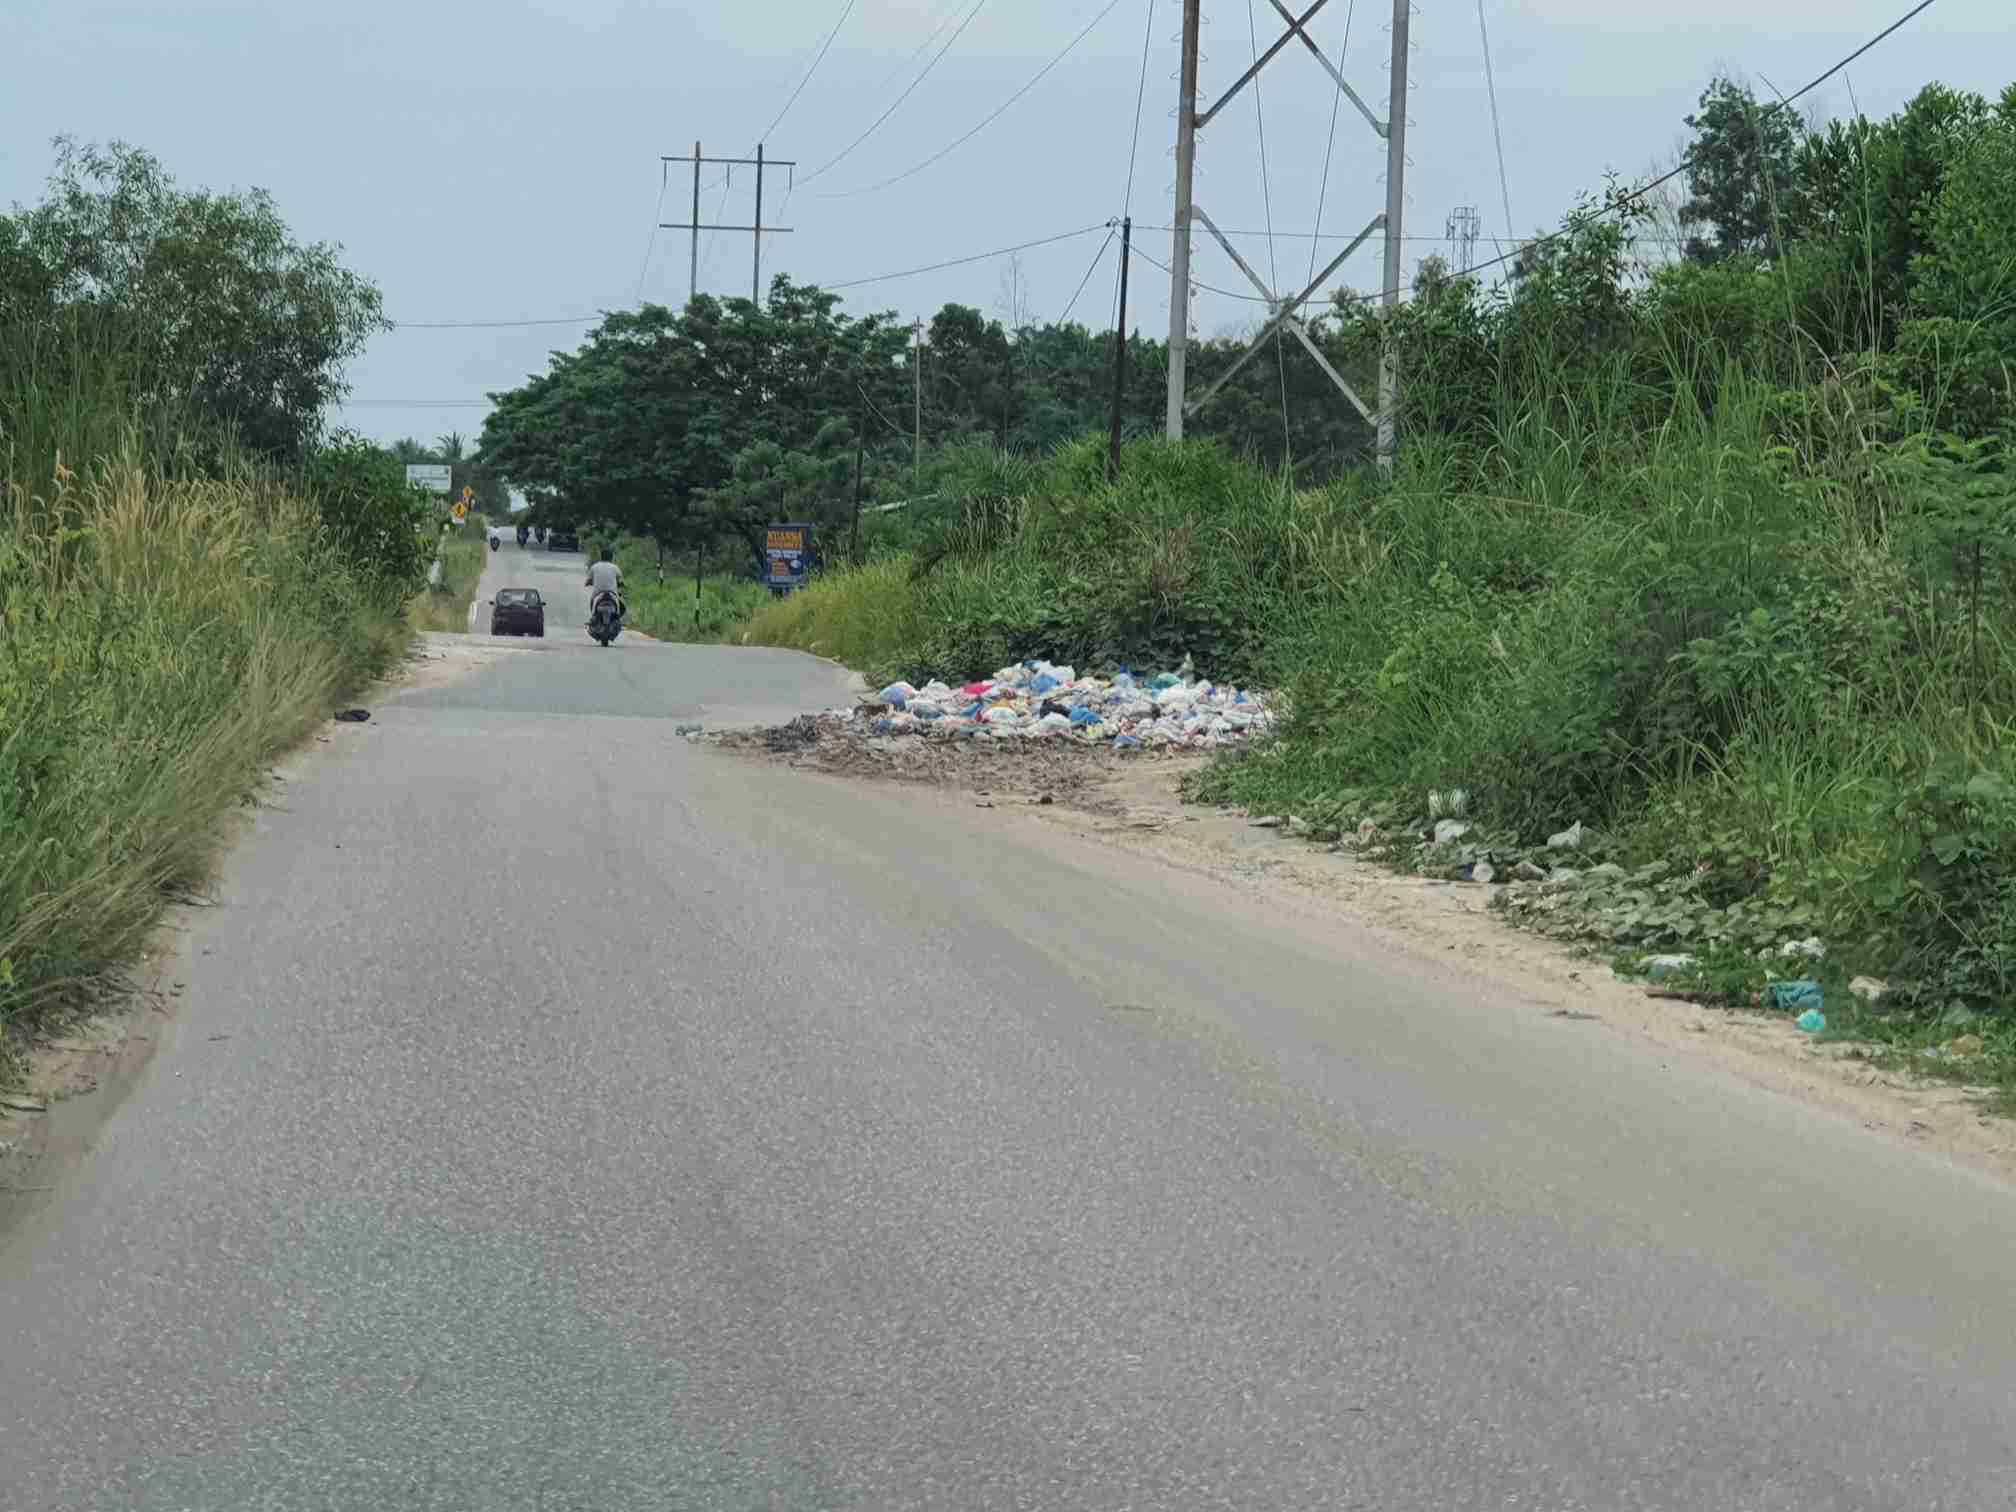 Sampah di Jalan Pipa Air Bersih Memakan Jalan, Siapa Yang Patut Disalahkan?